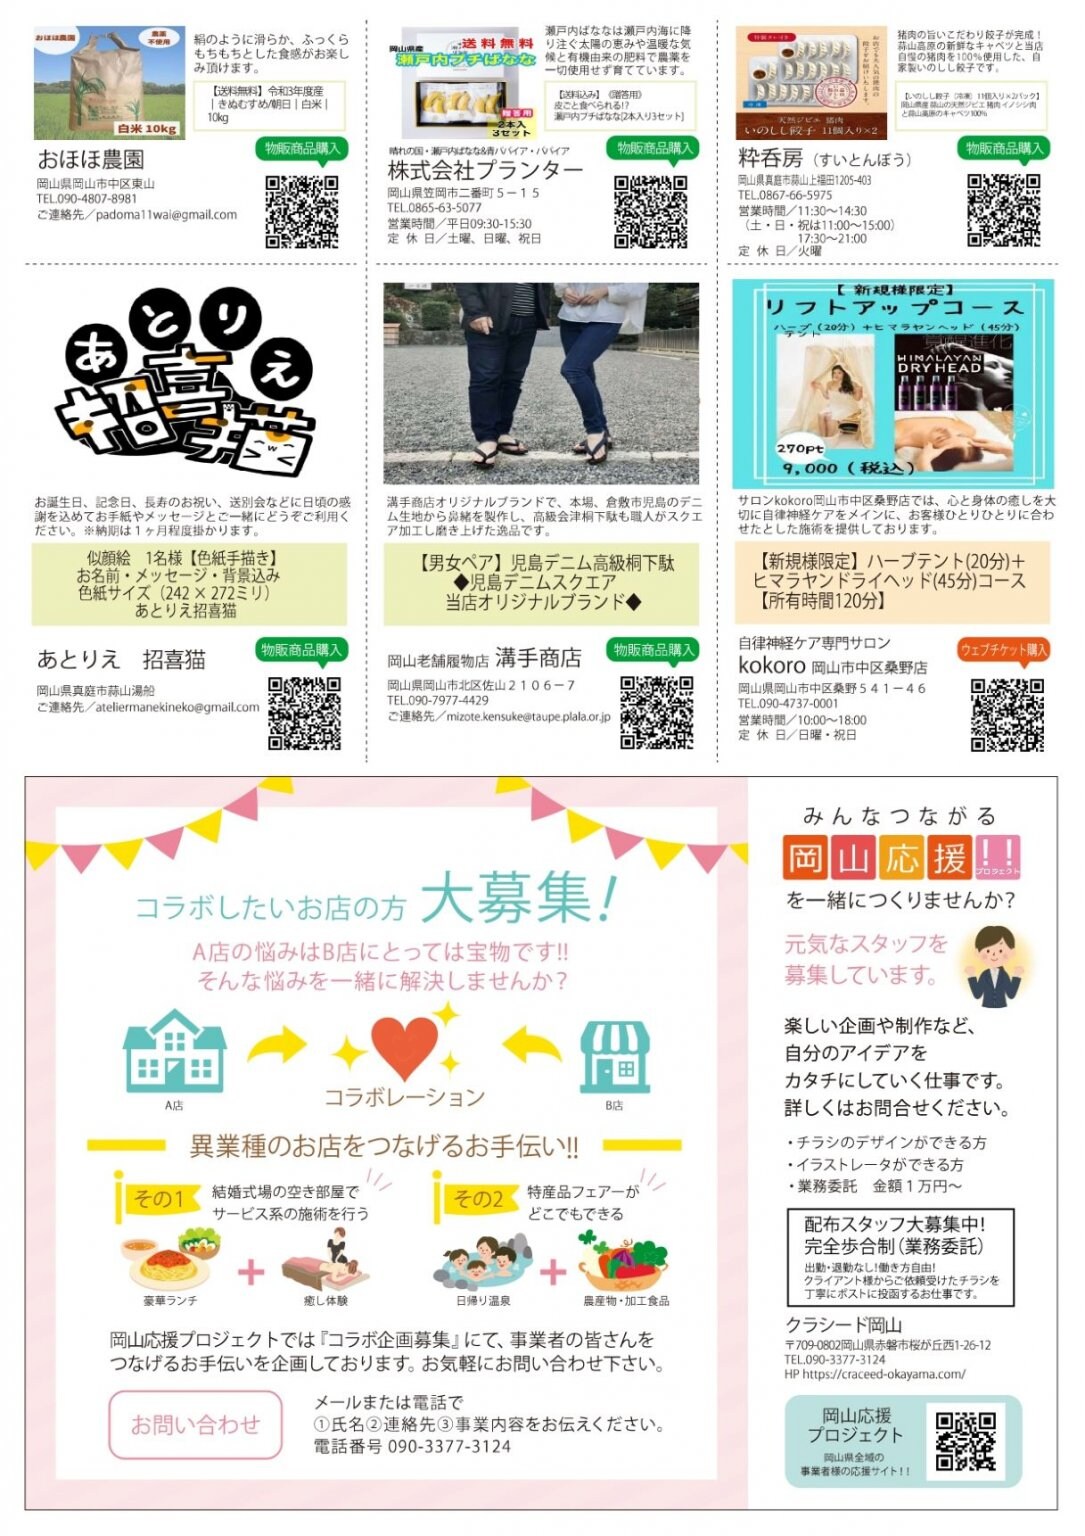 【初回限定】岡山応援プロジェクト掲載代¥5000チケット